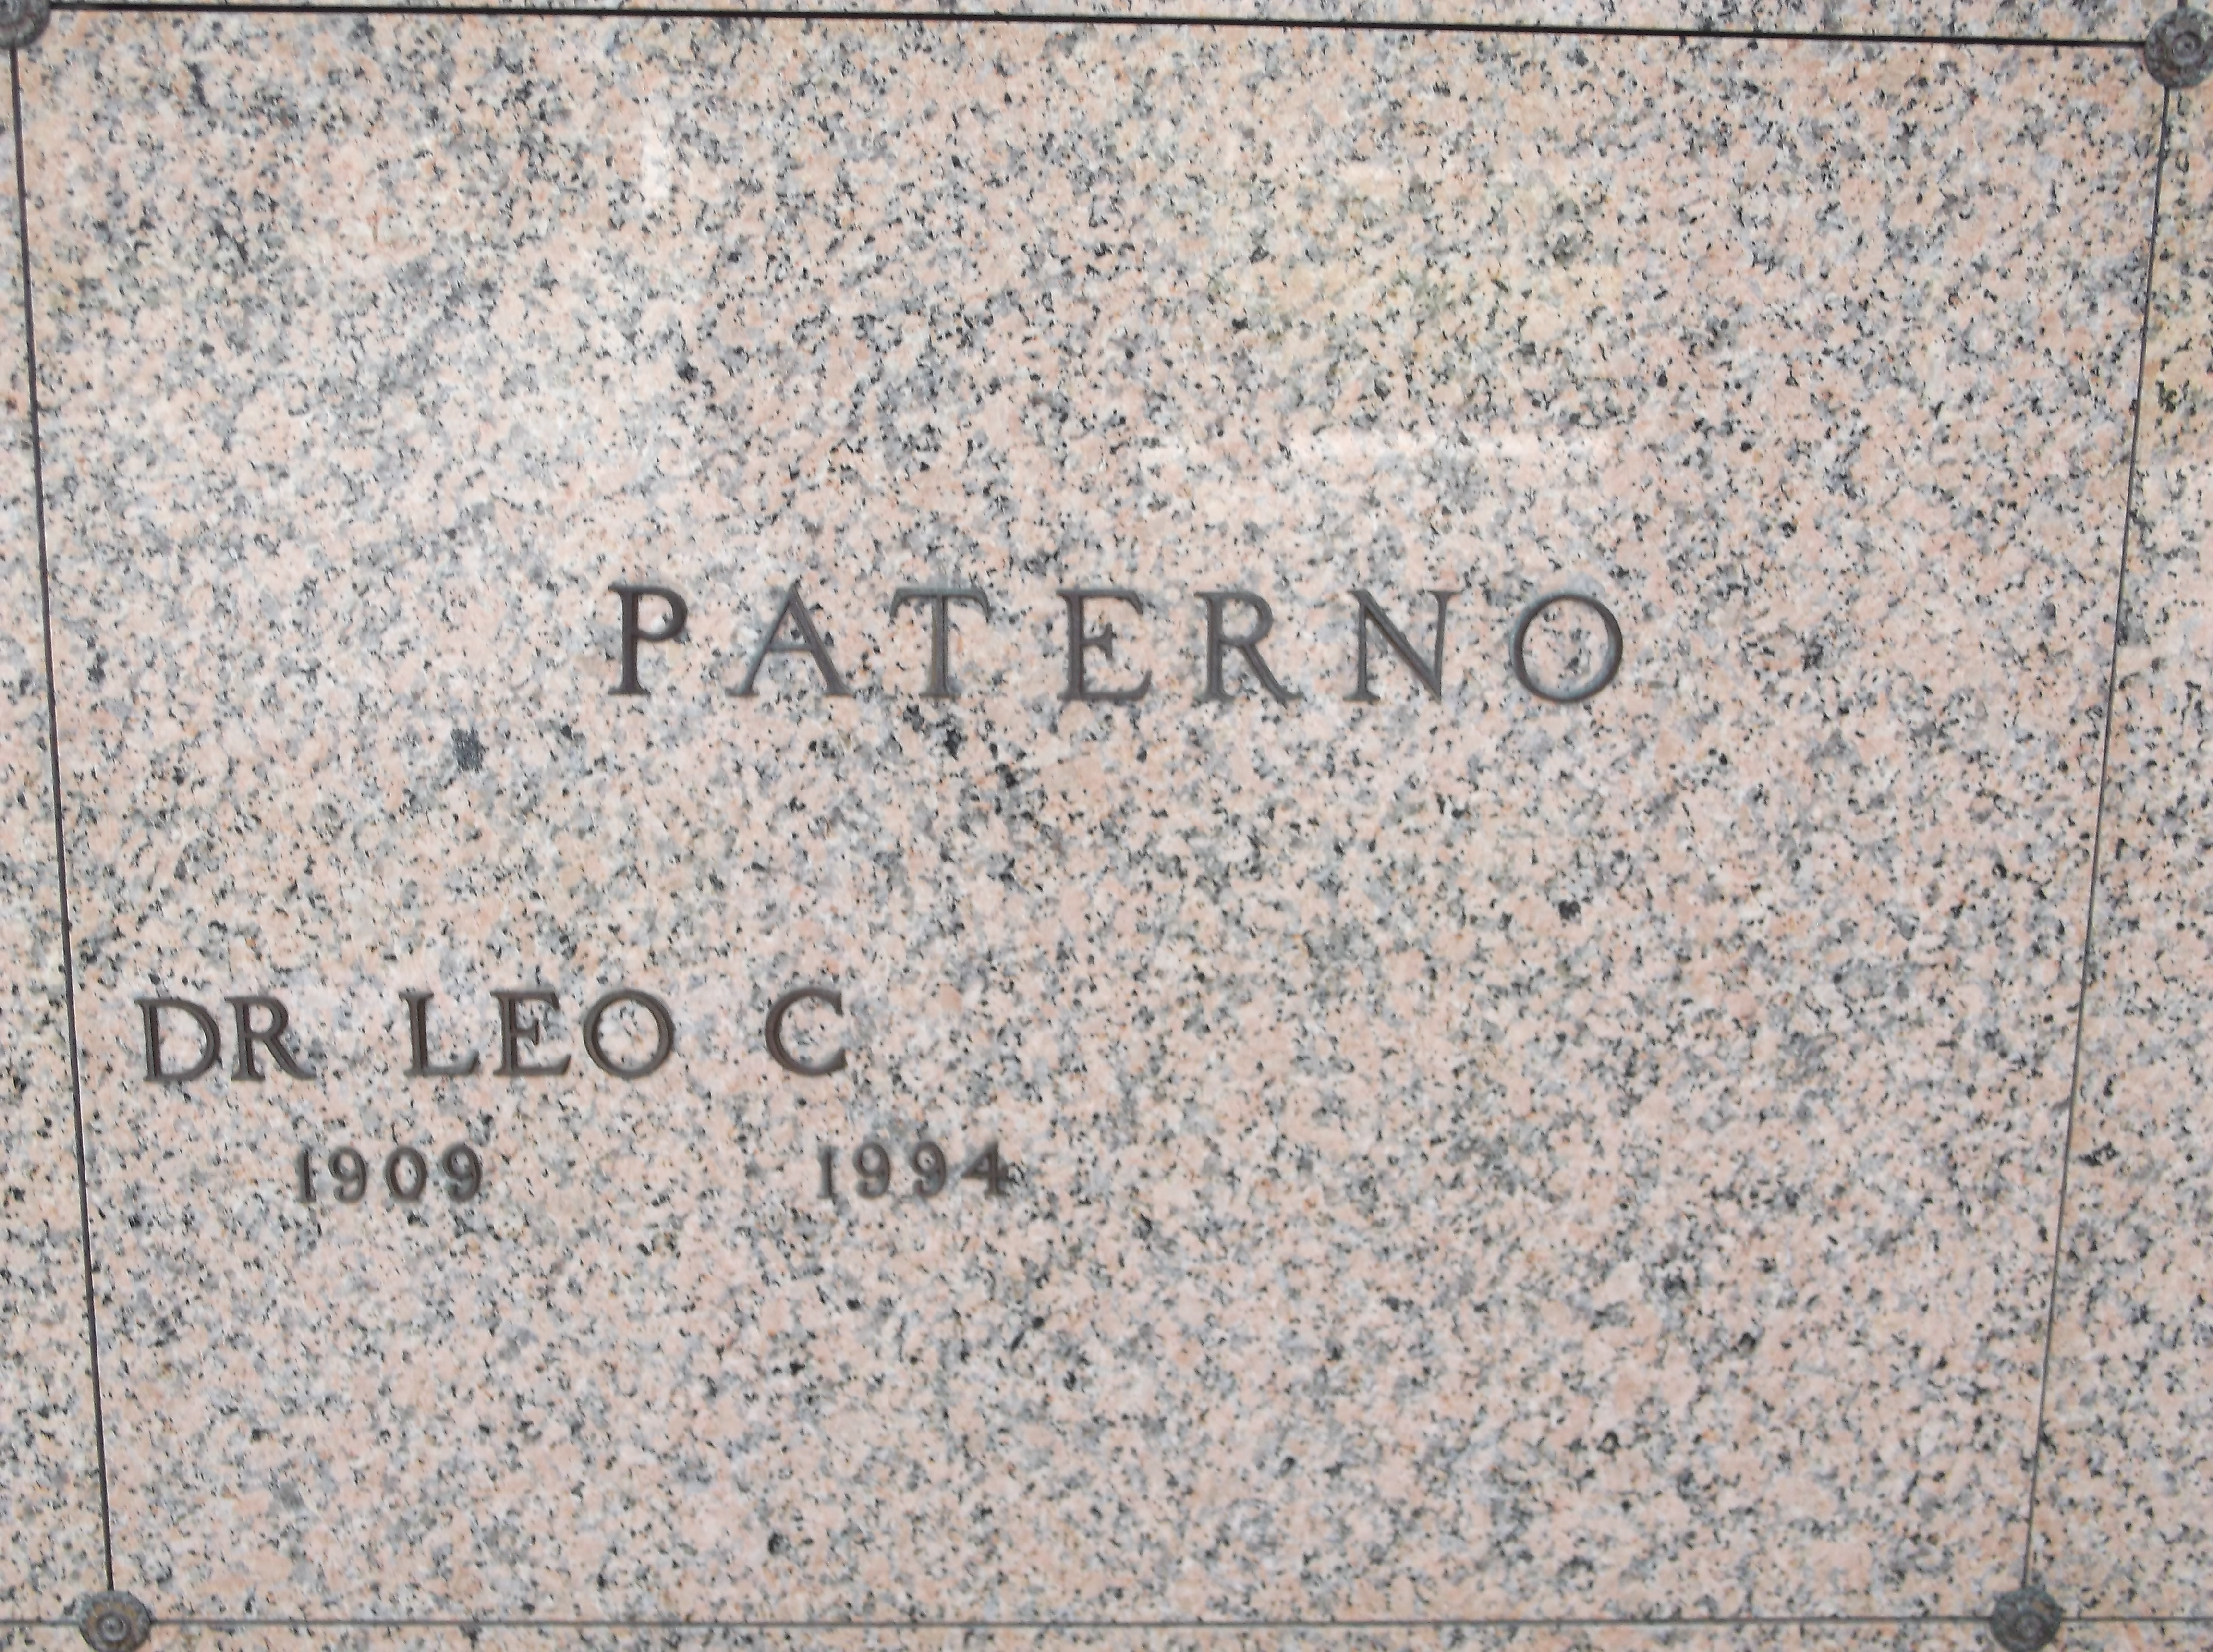 Dr Leo C Paterno